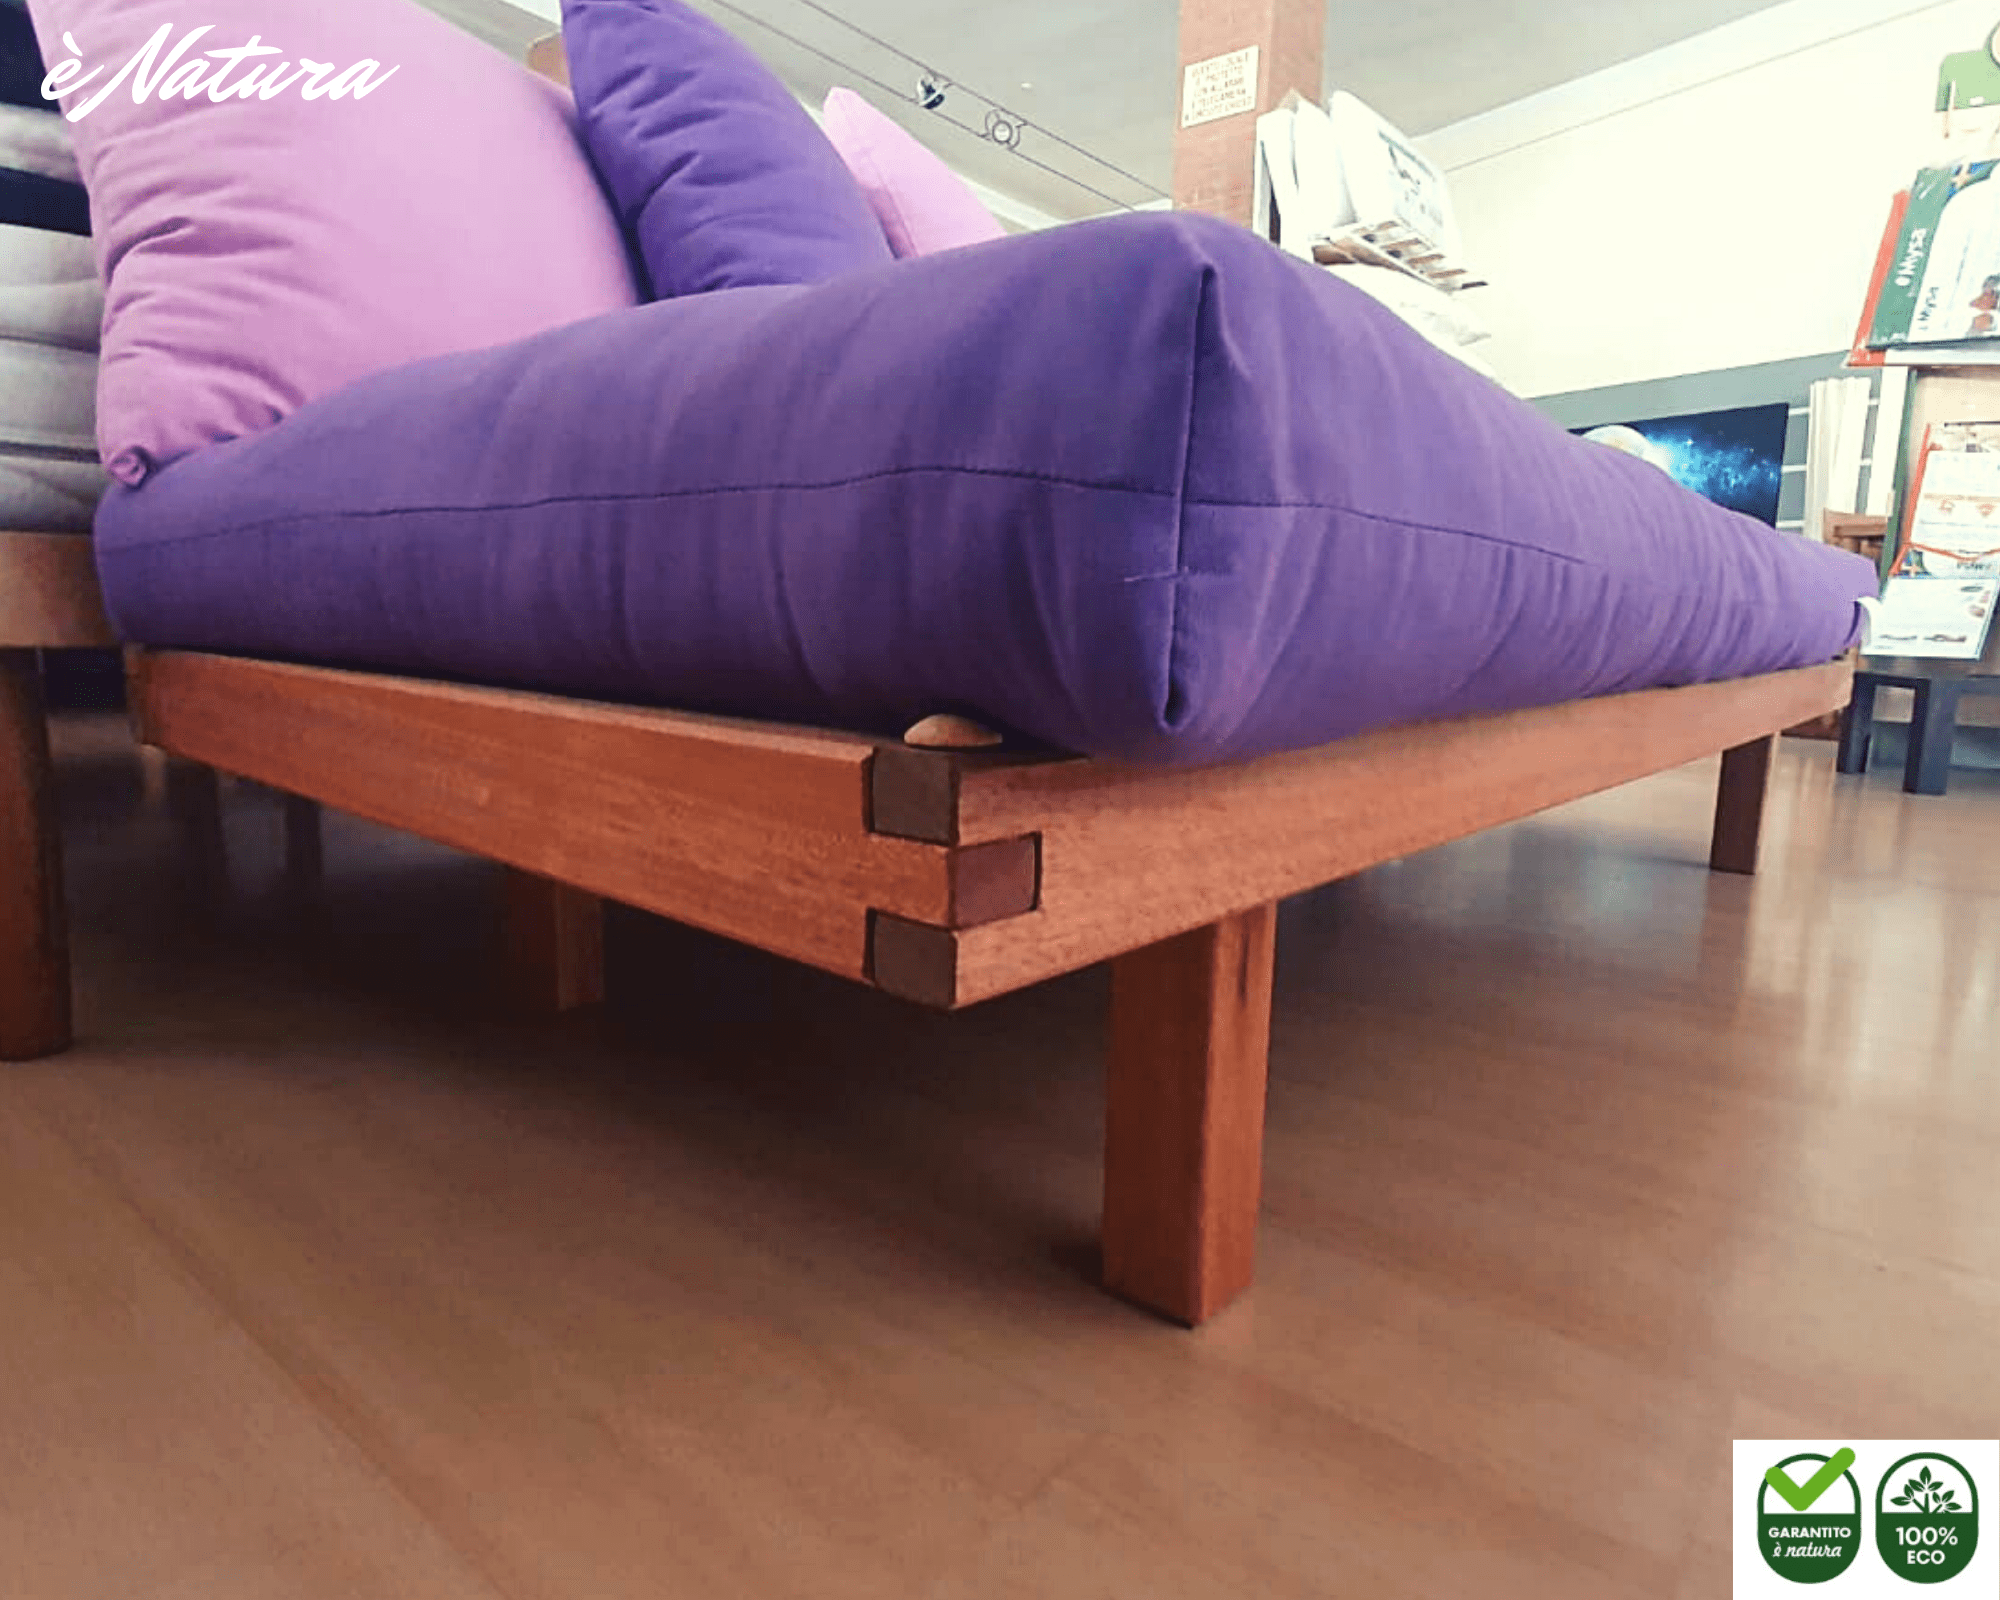 Divano-letto Lombok in Okumè + futon in cotone + set 4 cuscini 50 x 50 - emporio è natura